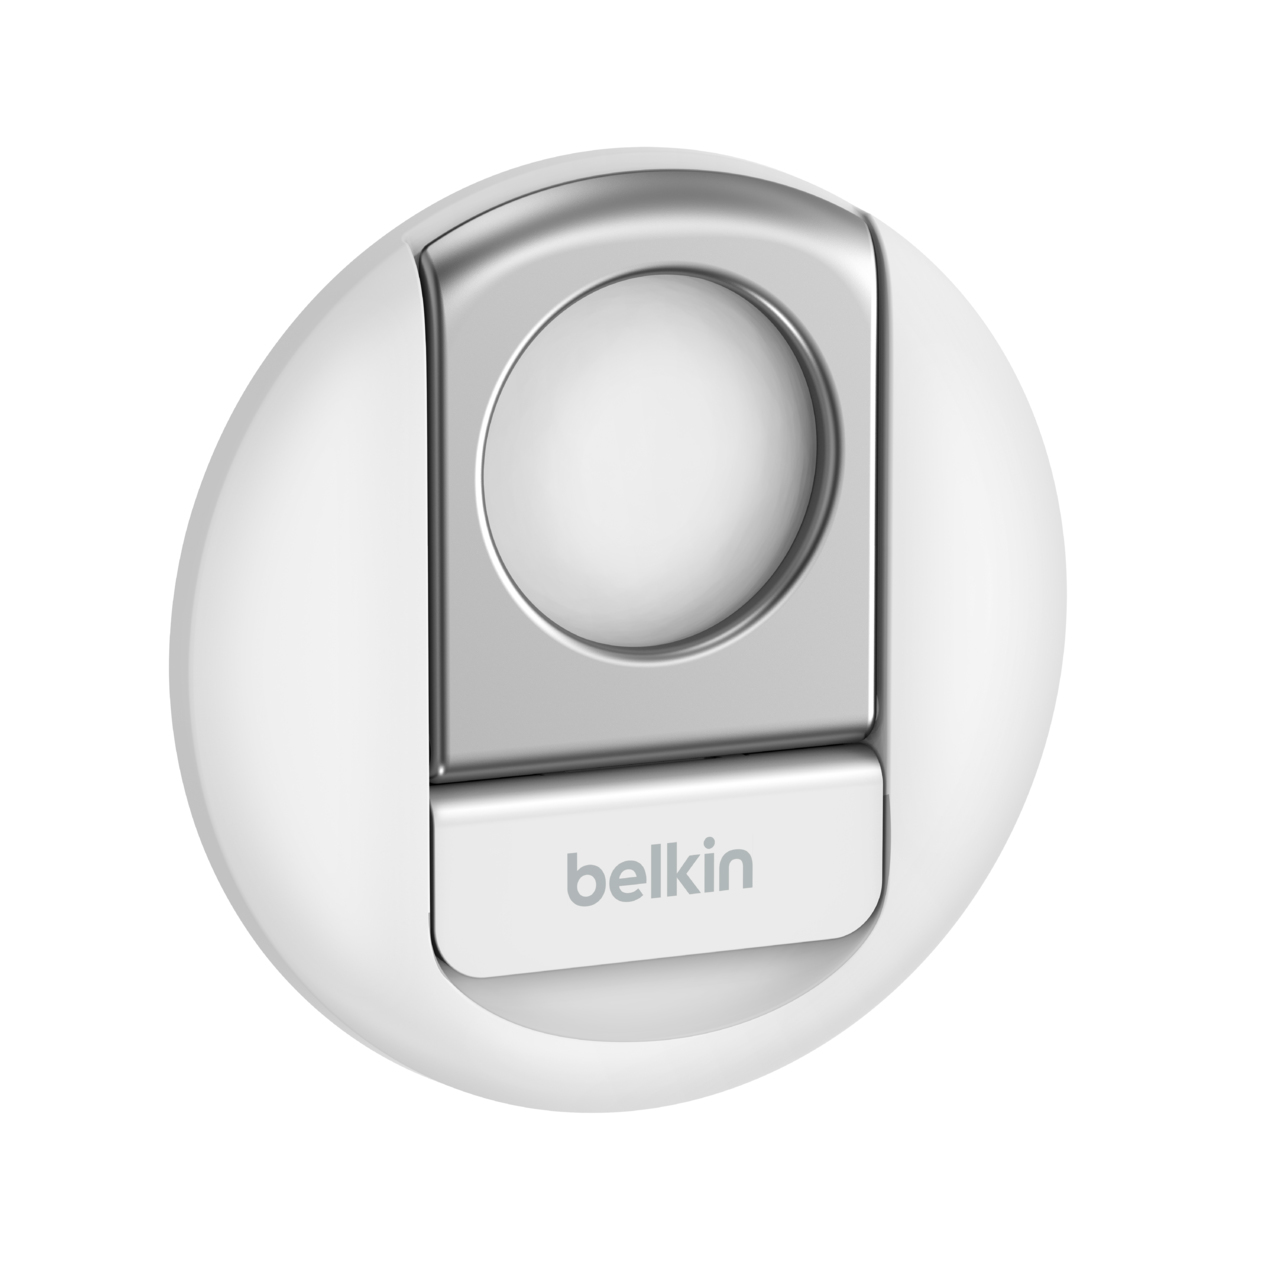 Belkin MMA006BTWH  Belkin Magnetbefestigung für Handy -  MagSafe-kompatibel, für Mac Notebooks